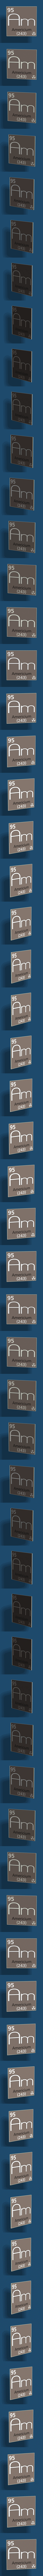 Americium element #95/118